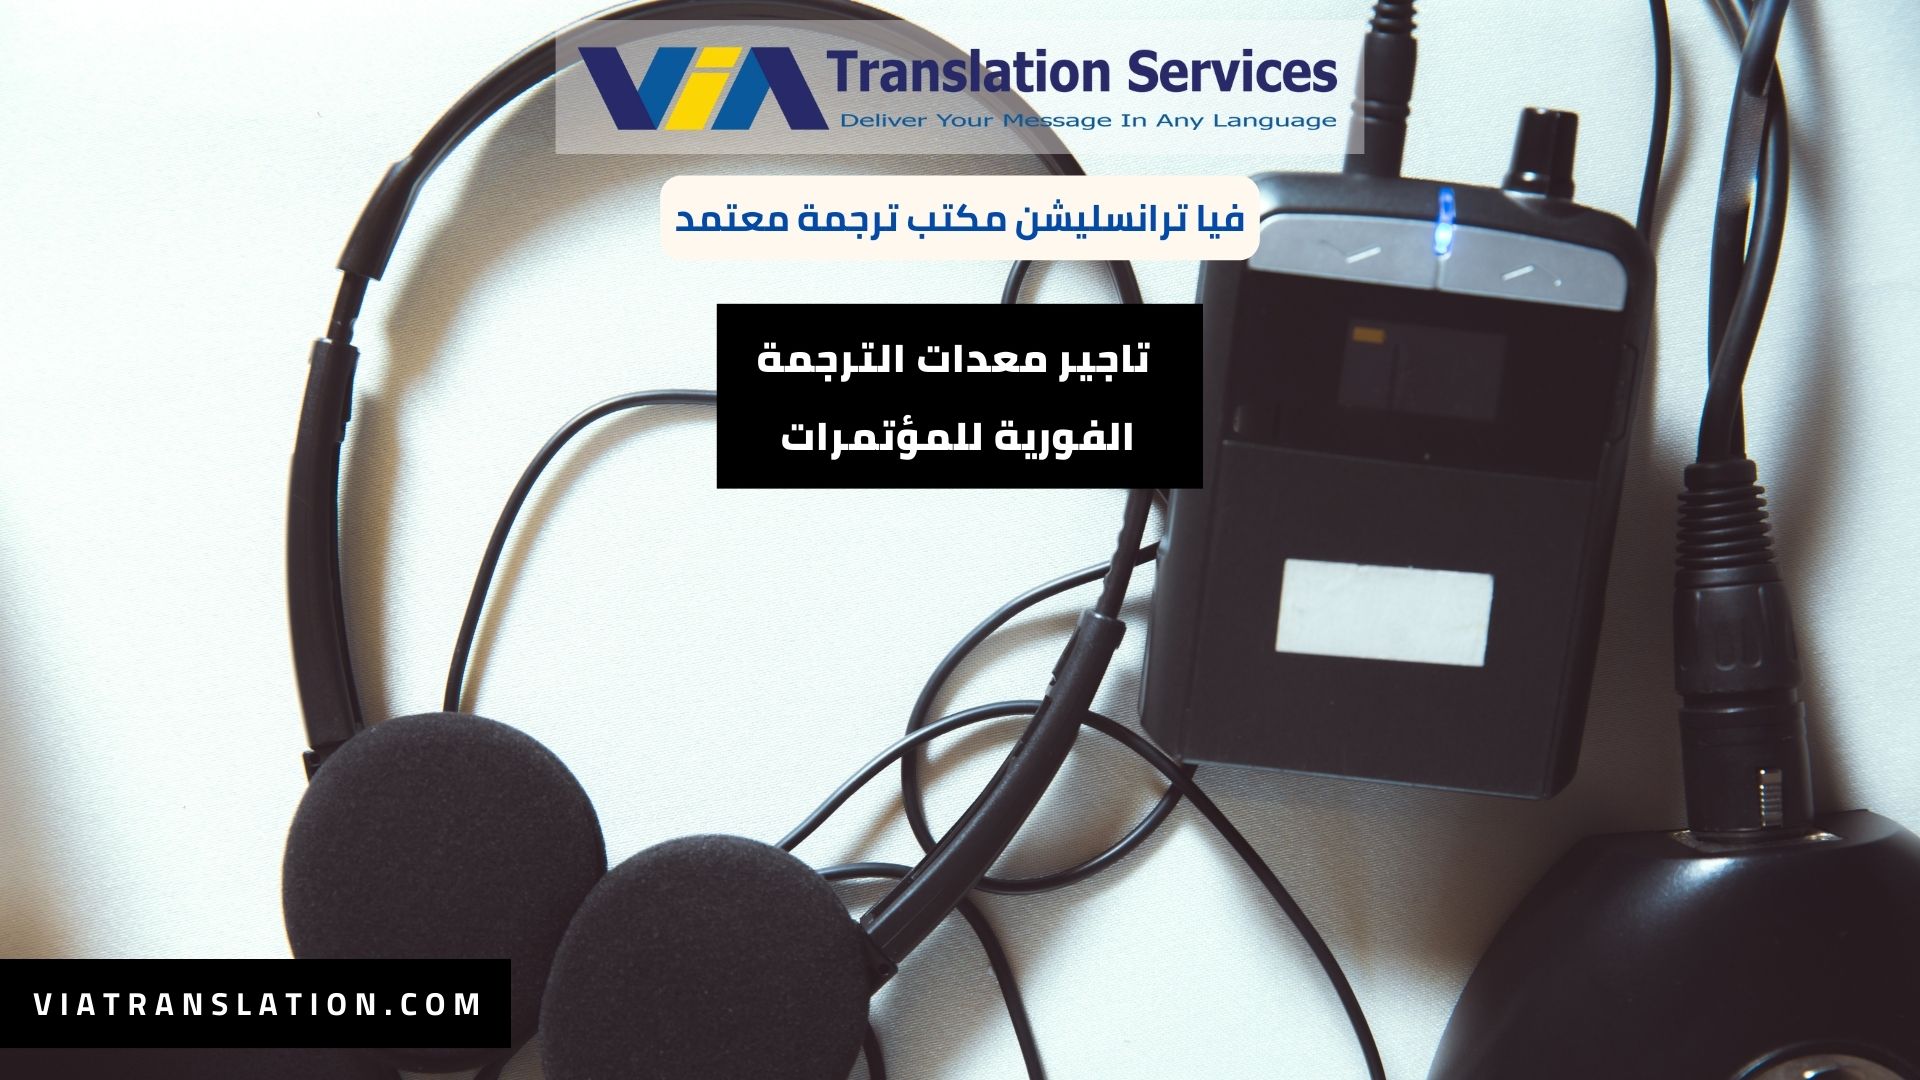 خدمة تاجير معدات الترجمة الفورية للمؤتمرات مع مترجمين